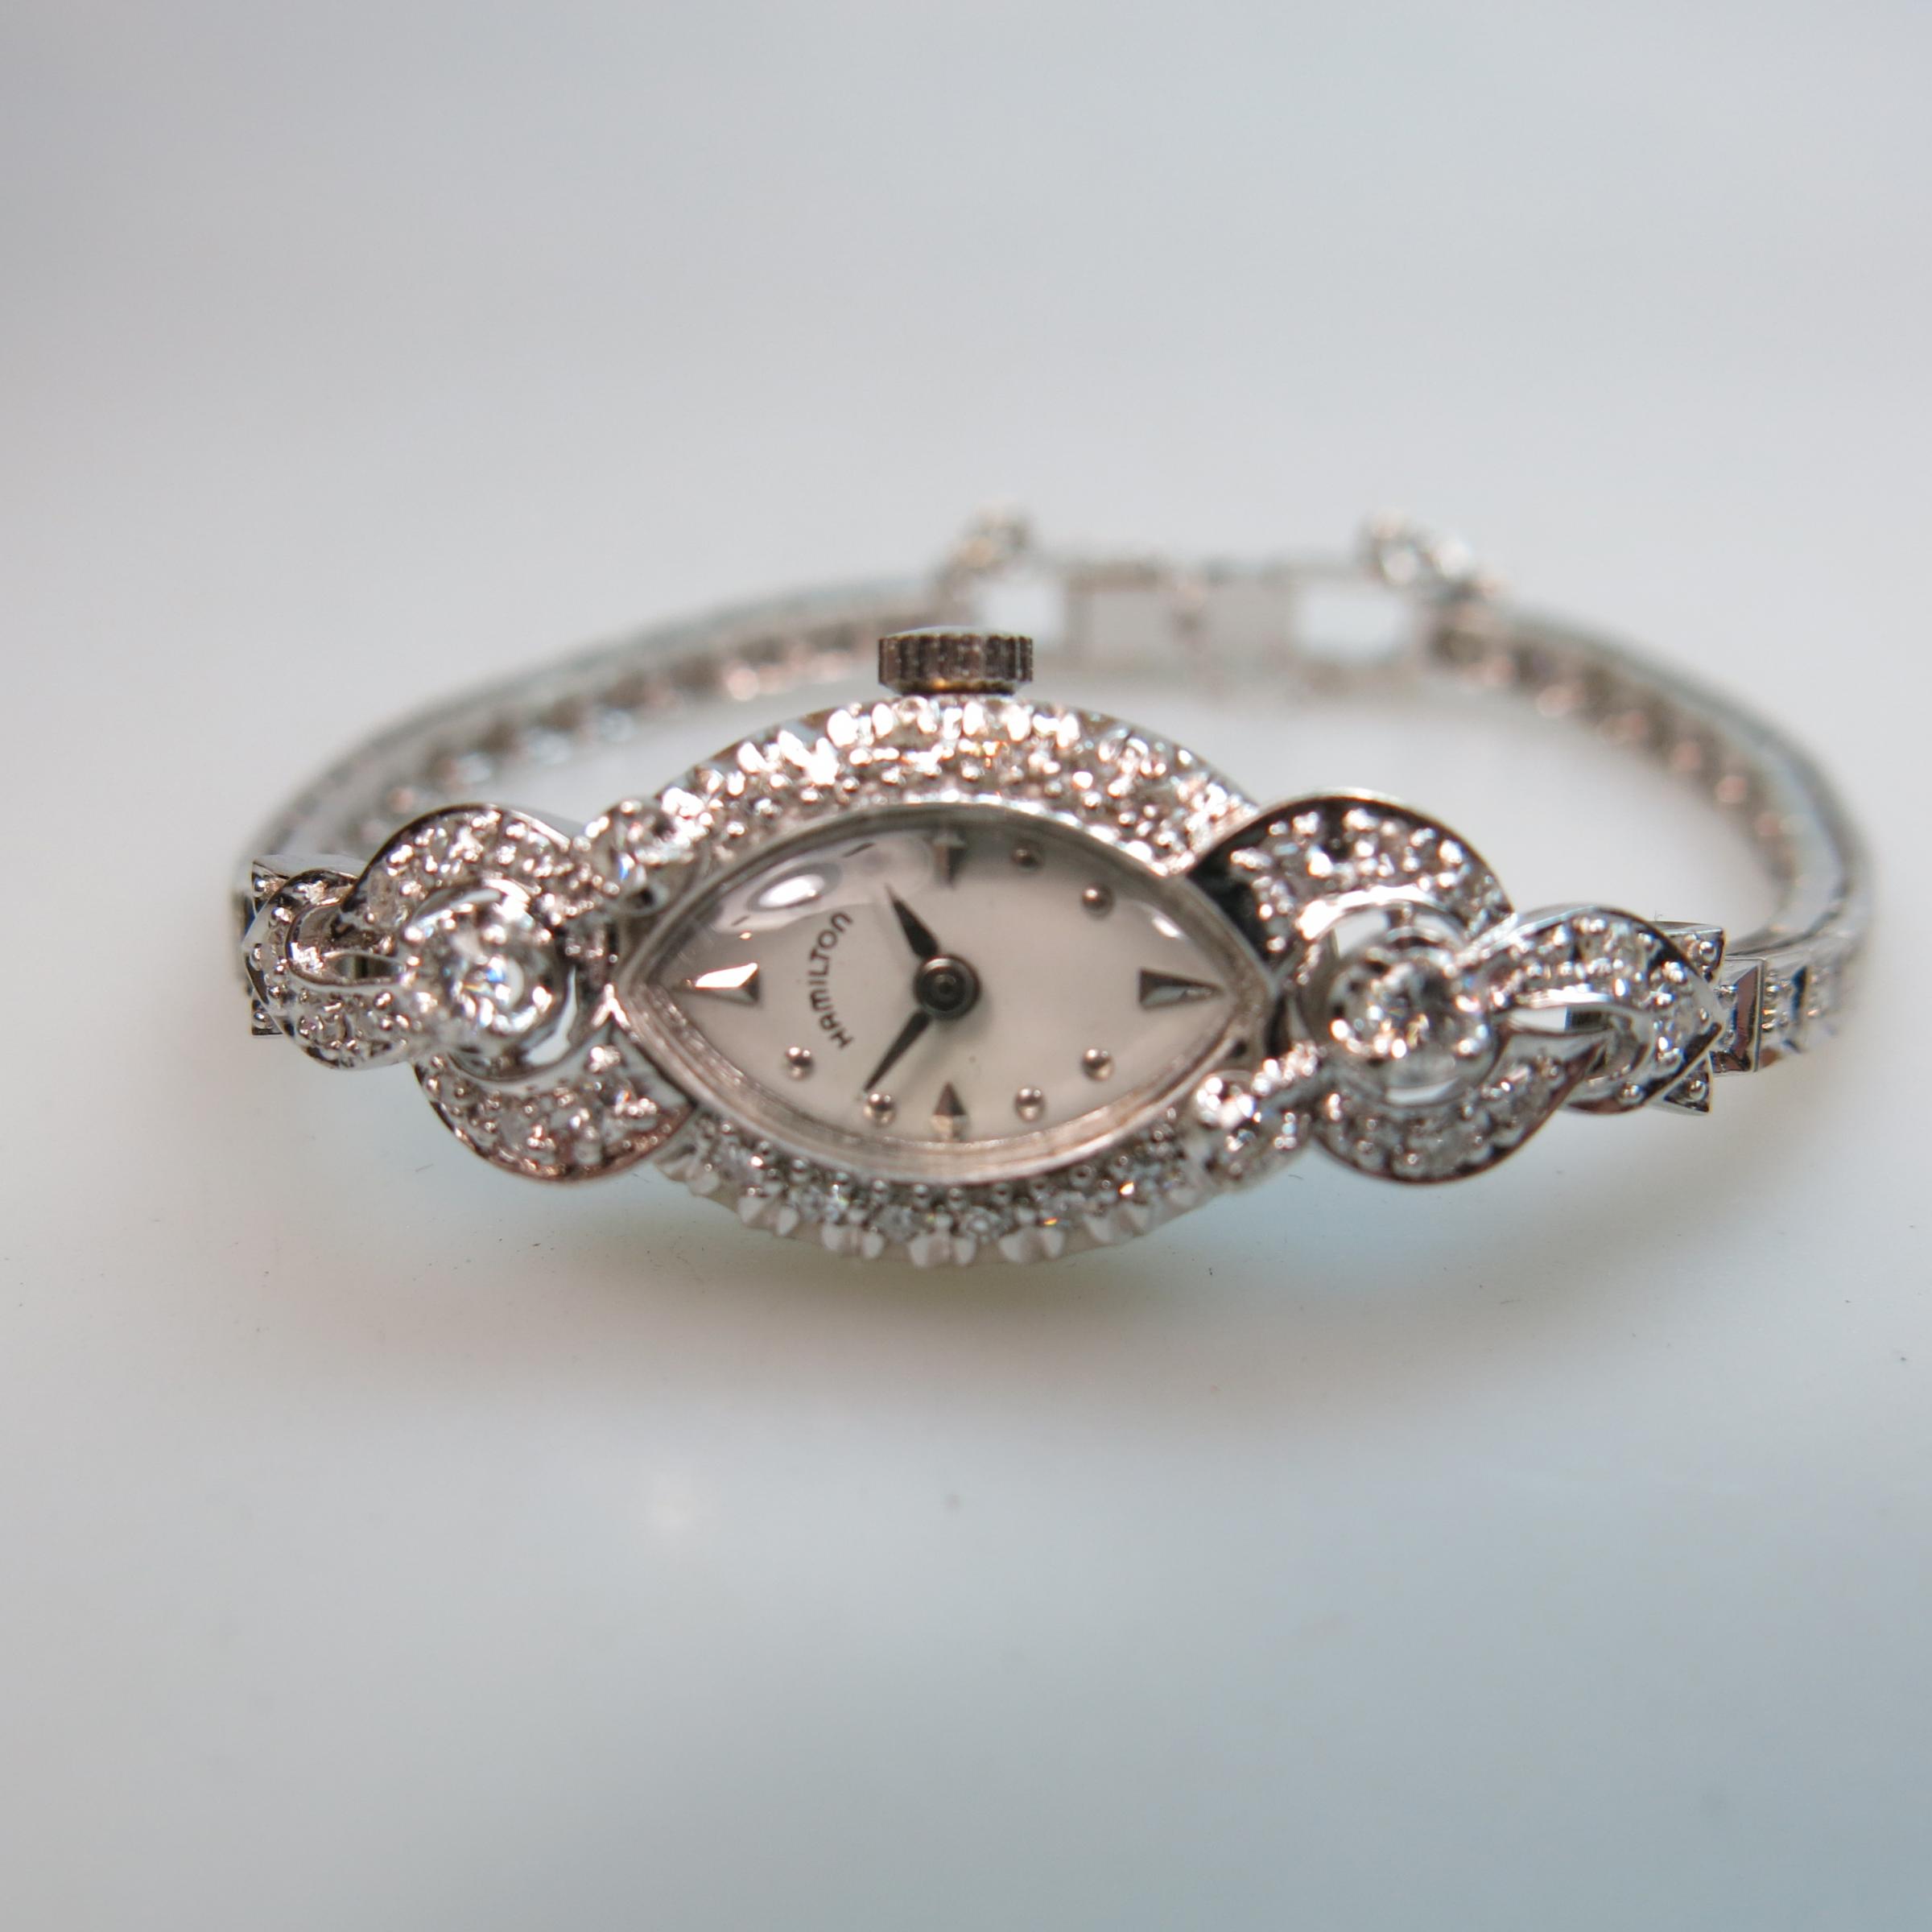 Lady's Hamilton Wristwatch